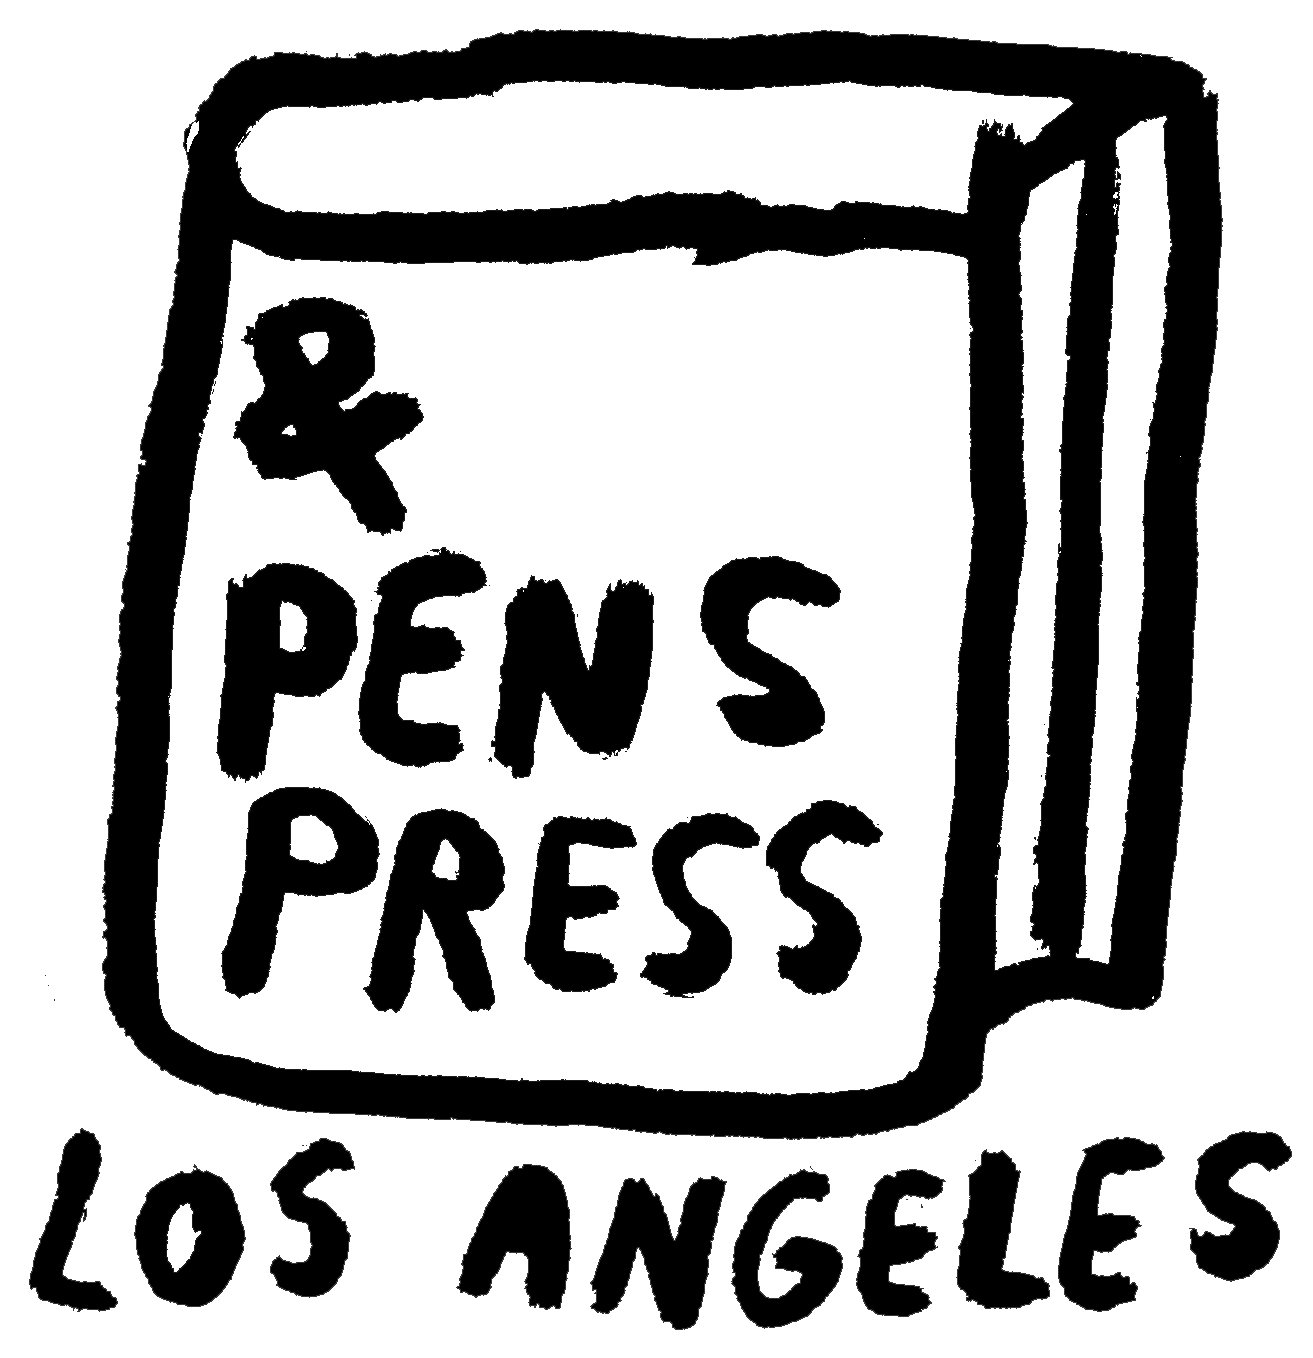 & Pens Press